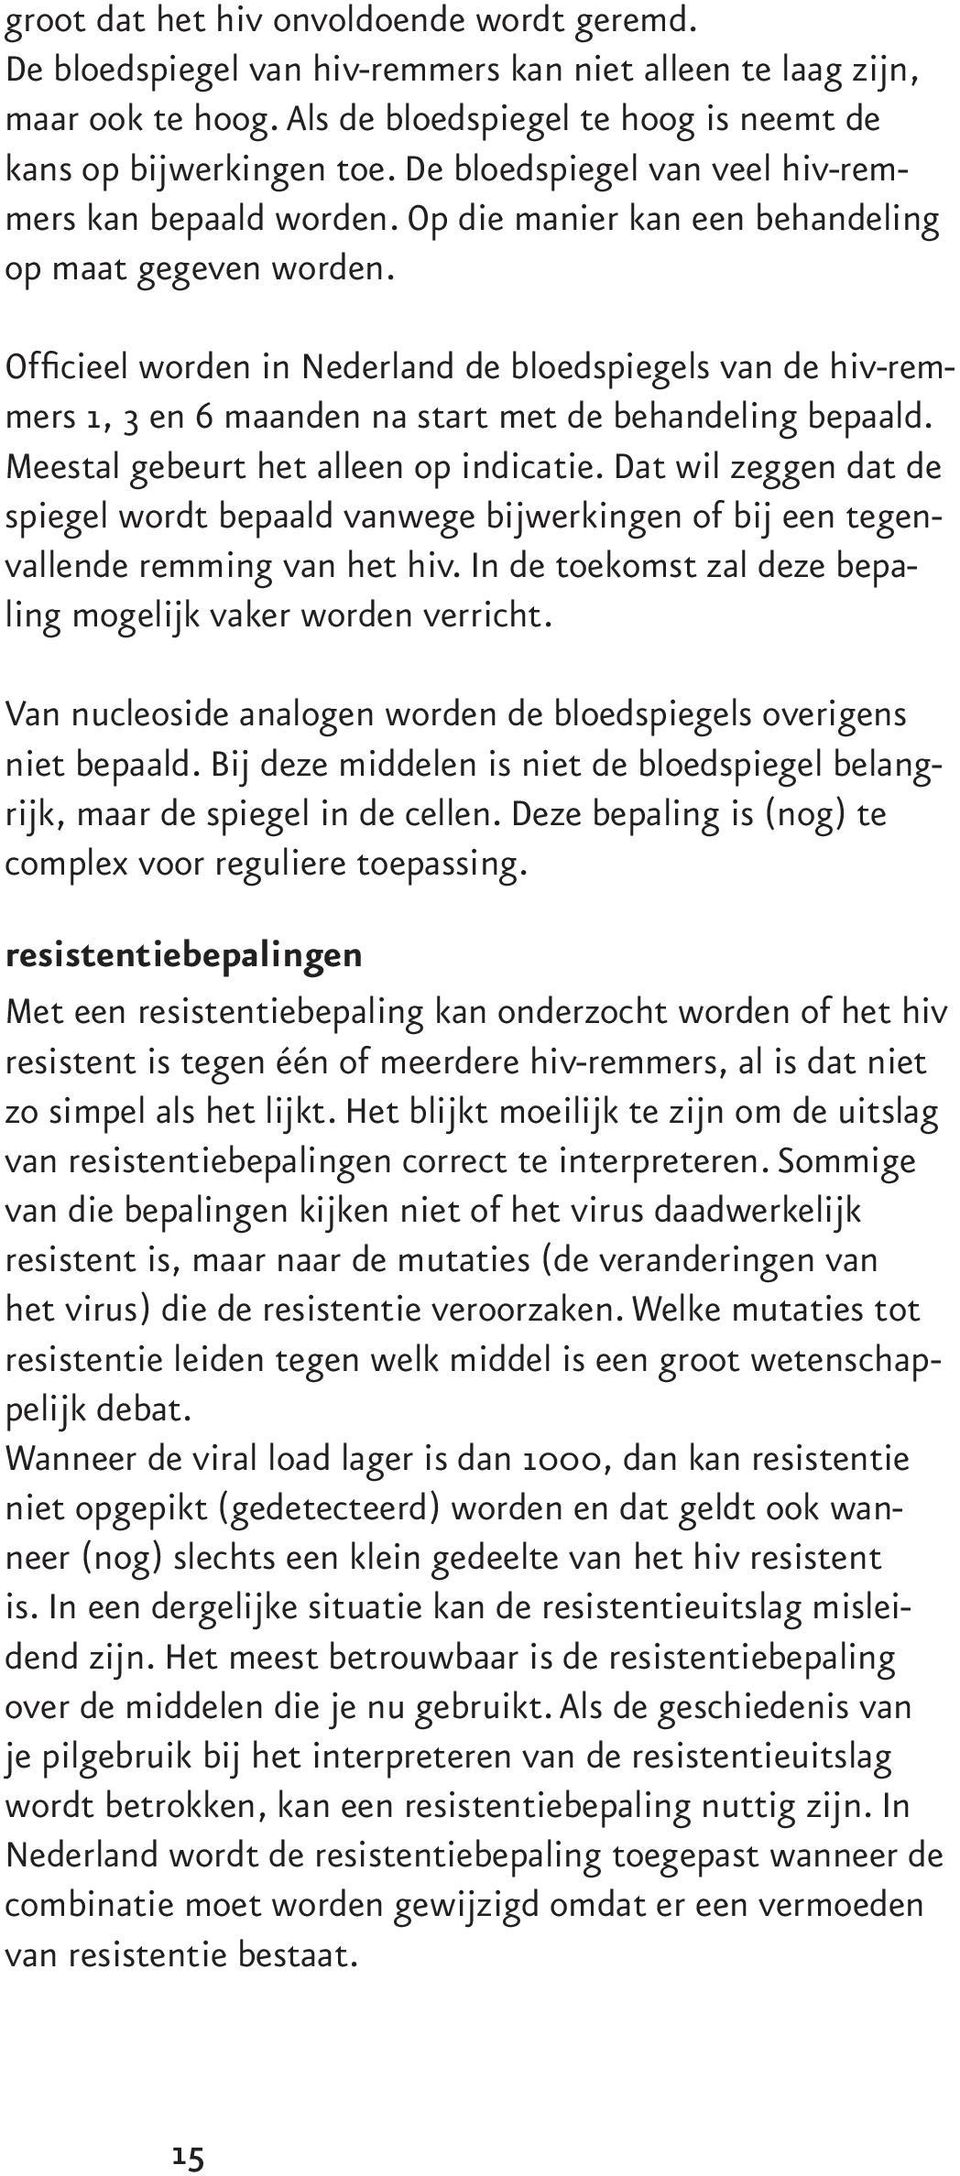 Officieel worden in Nederland de bloedspiegels van de hiv-remmers 1, 3 en 6 maanden na start met de behandeling bepaald. Meestal gebeurt het alleen op indicatie.